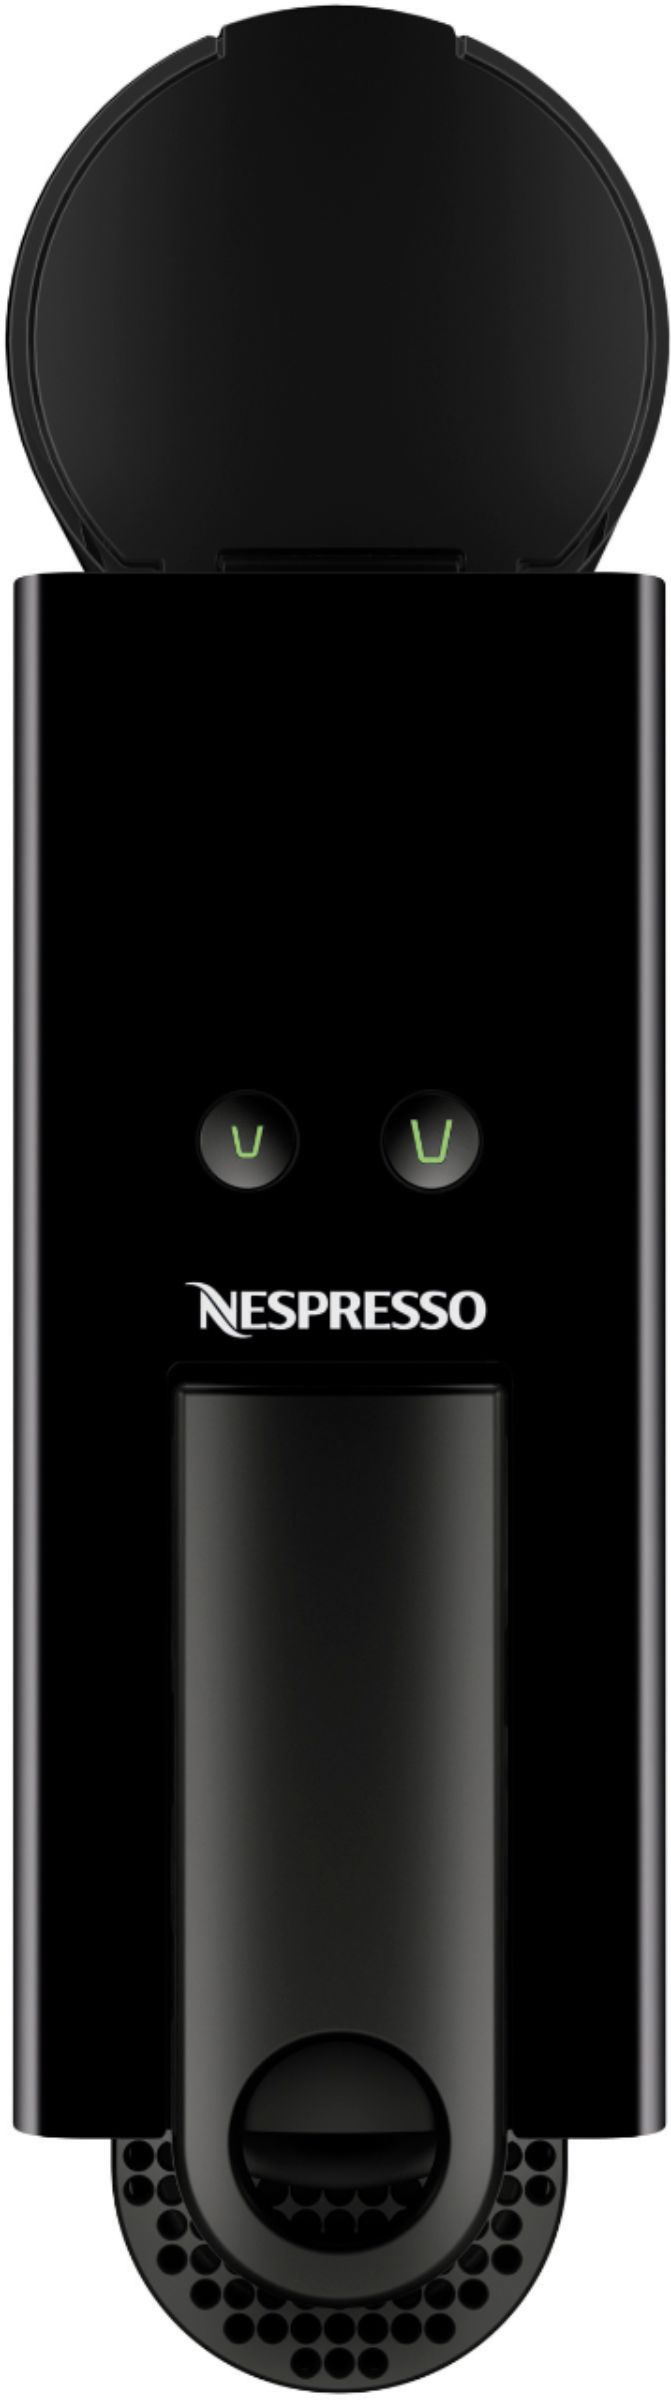 Nespresso Essenza Mini XN110B40 Coffee Machine - Shop Best Coffee